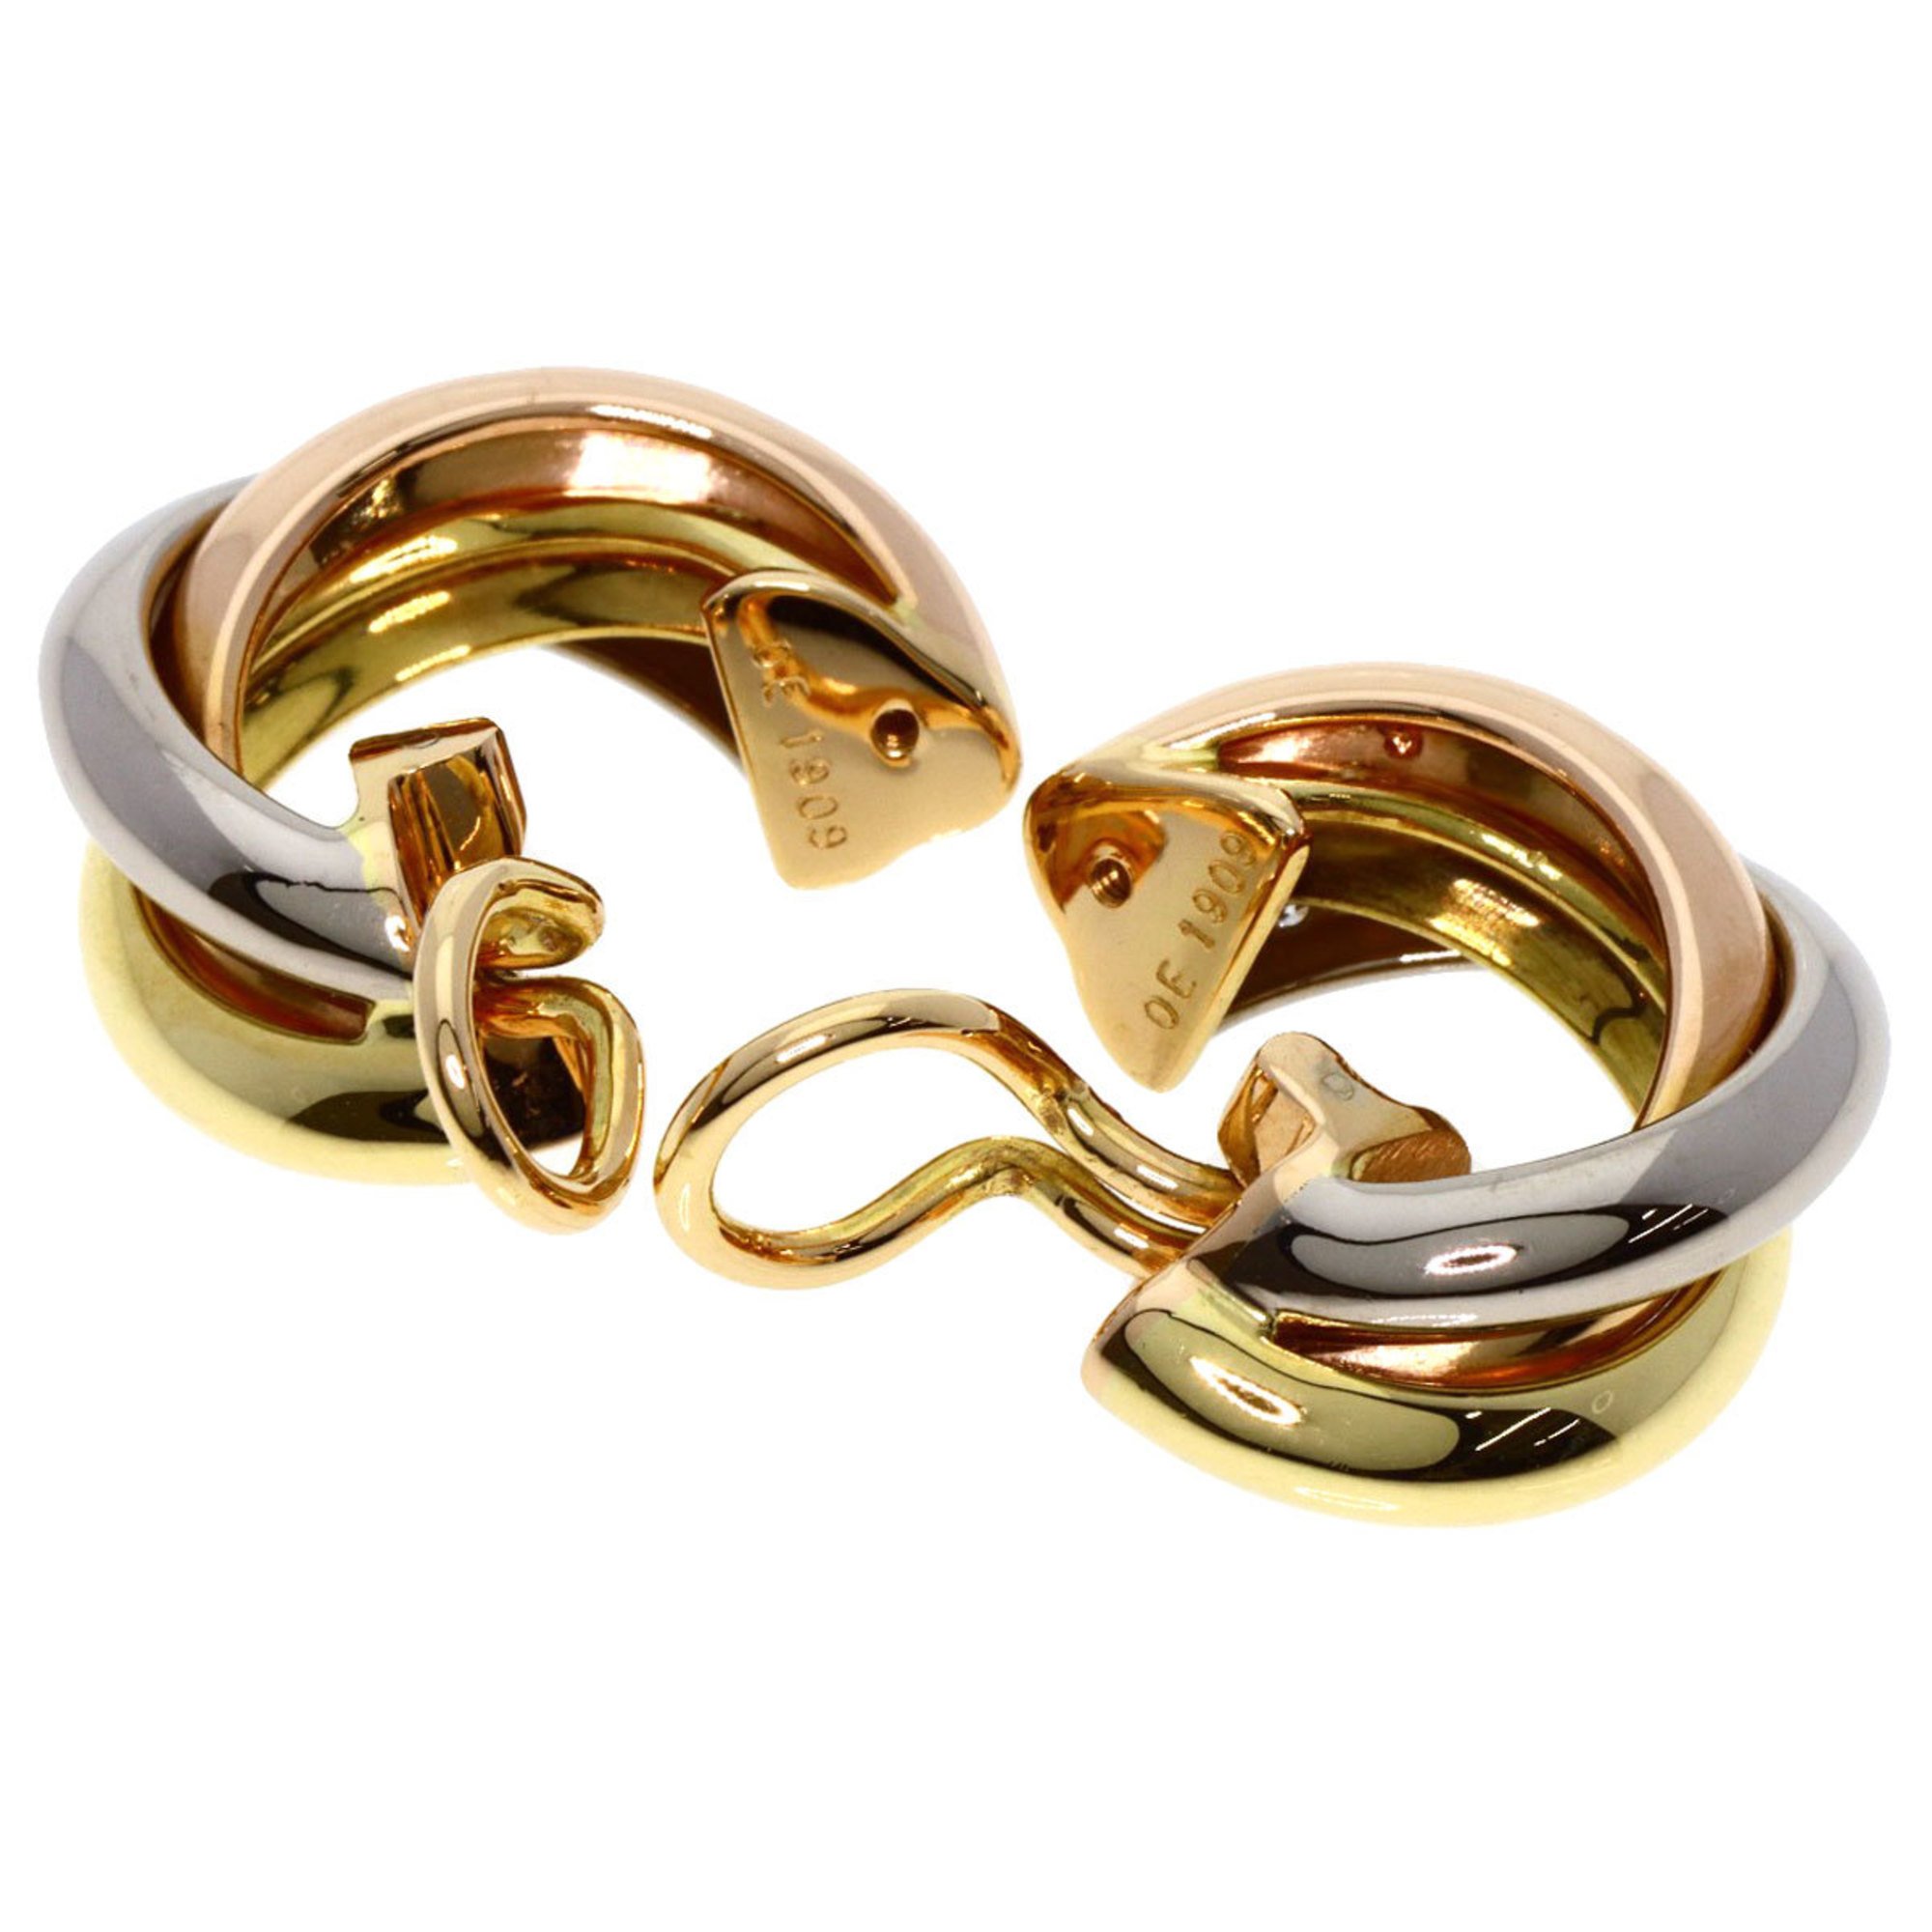 Cartier Trinity Diamond Earrings K18 Yellow Gold/K18WG/K18PG Women's CARTIER